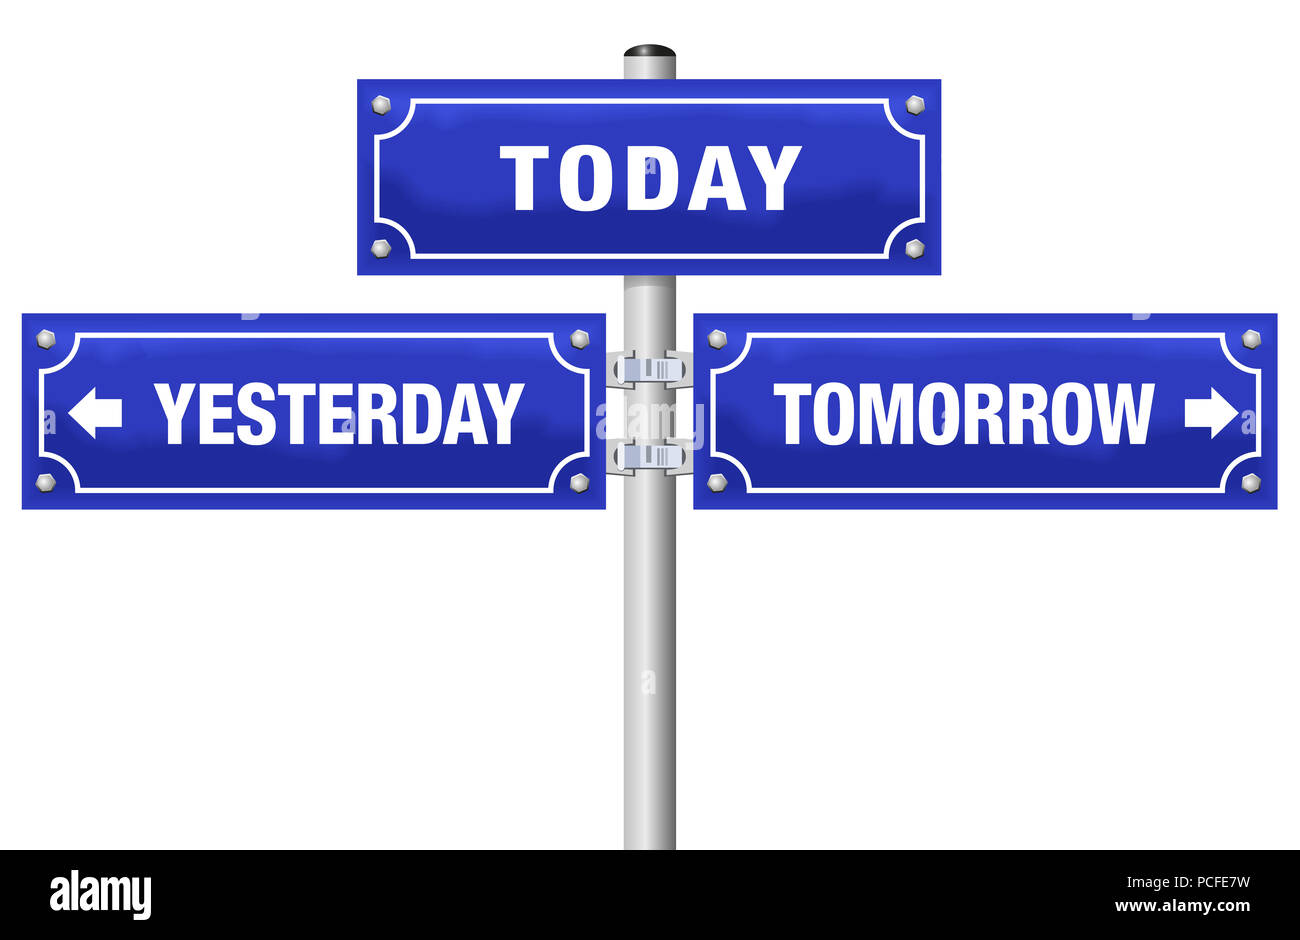 Gestern, Heute, Morgen, geschrieben auf drei blauen Wegweiser - symbolisch für das Leben im Hier und Jetzt, nicht in der Vergangenheit oder in der Zukunft. Stockfoto